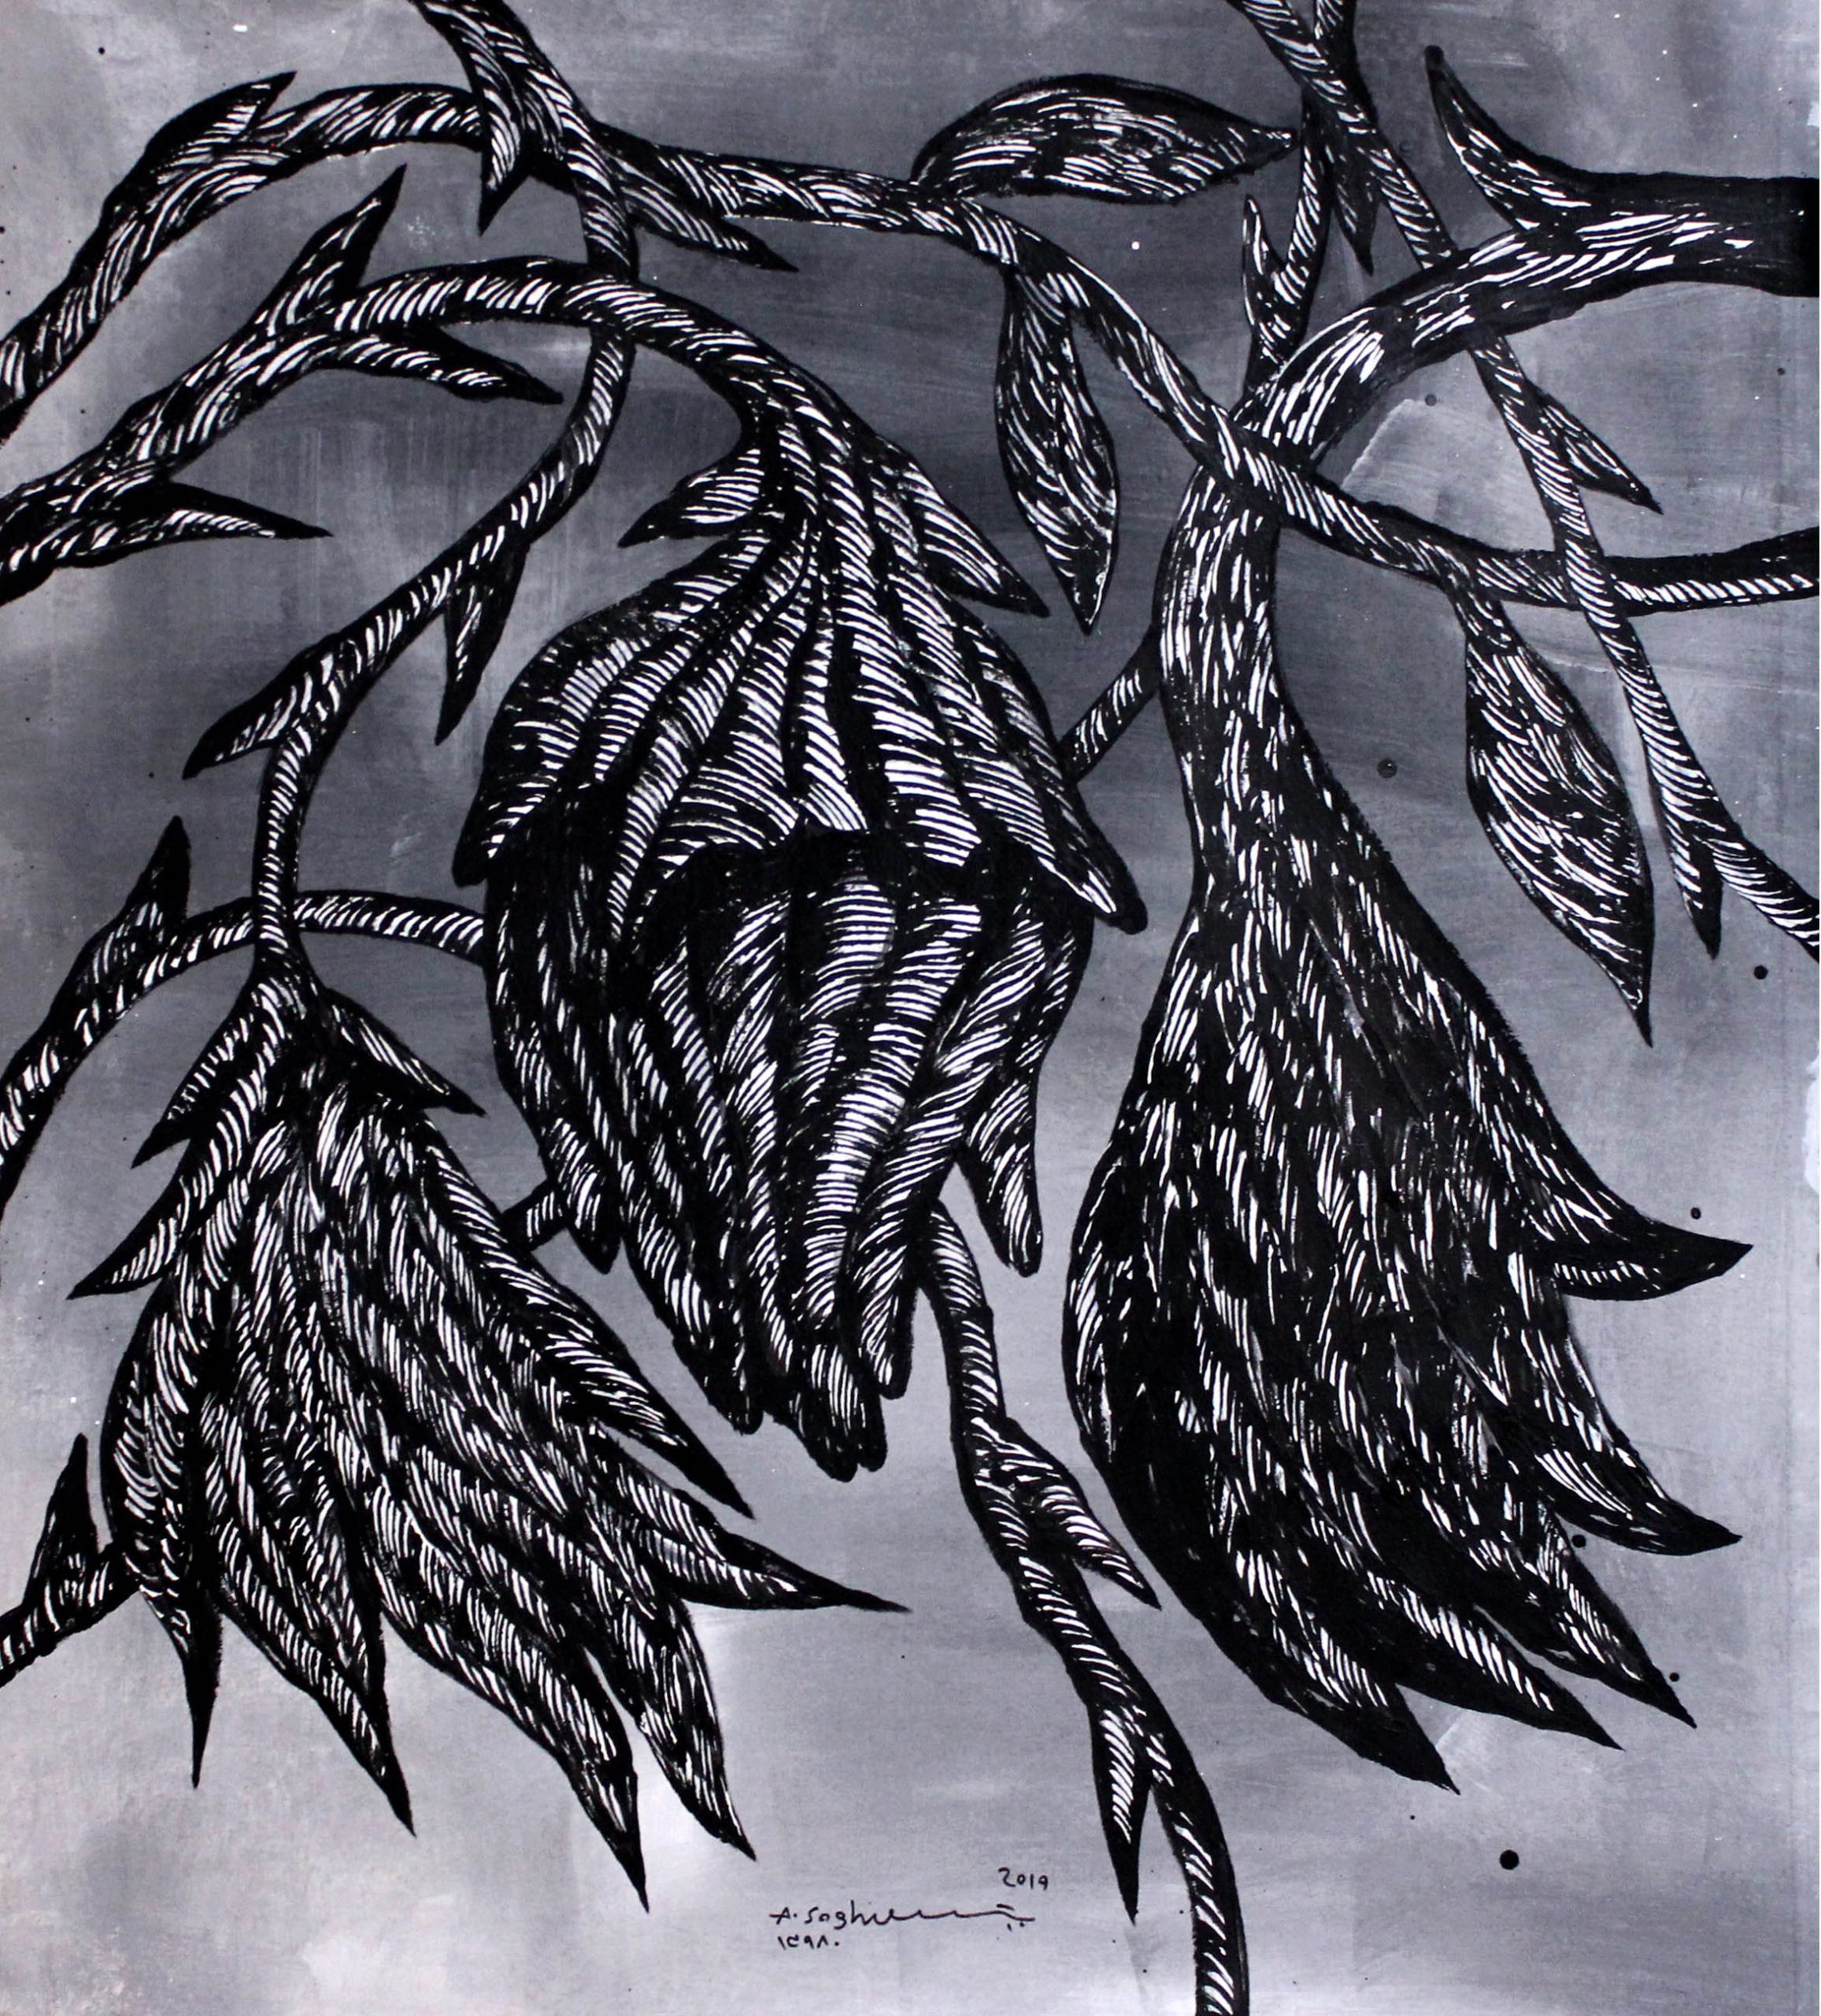 01 Amir Soghrati 110.110 Cm Acrylic on Canvas 2019 Tasian Series scaled - Group Exhibition | Ten Days Like Flower | Amir Soghrati - Group Exhibition | Ten Days Like Flower | Amir Soghrati